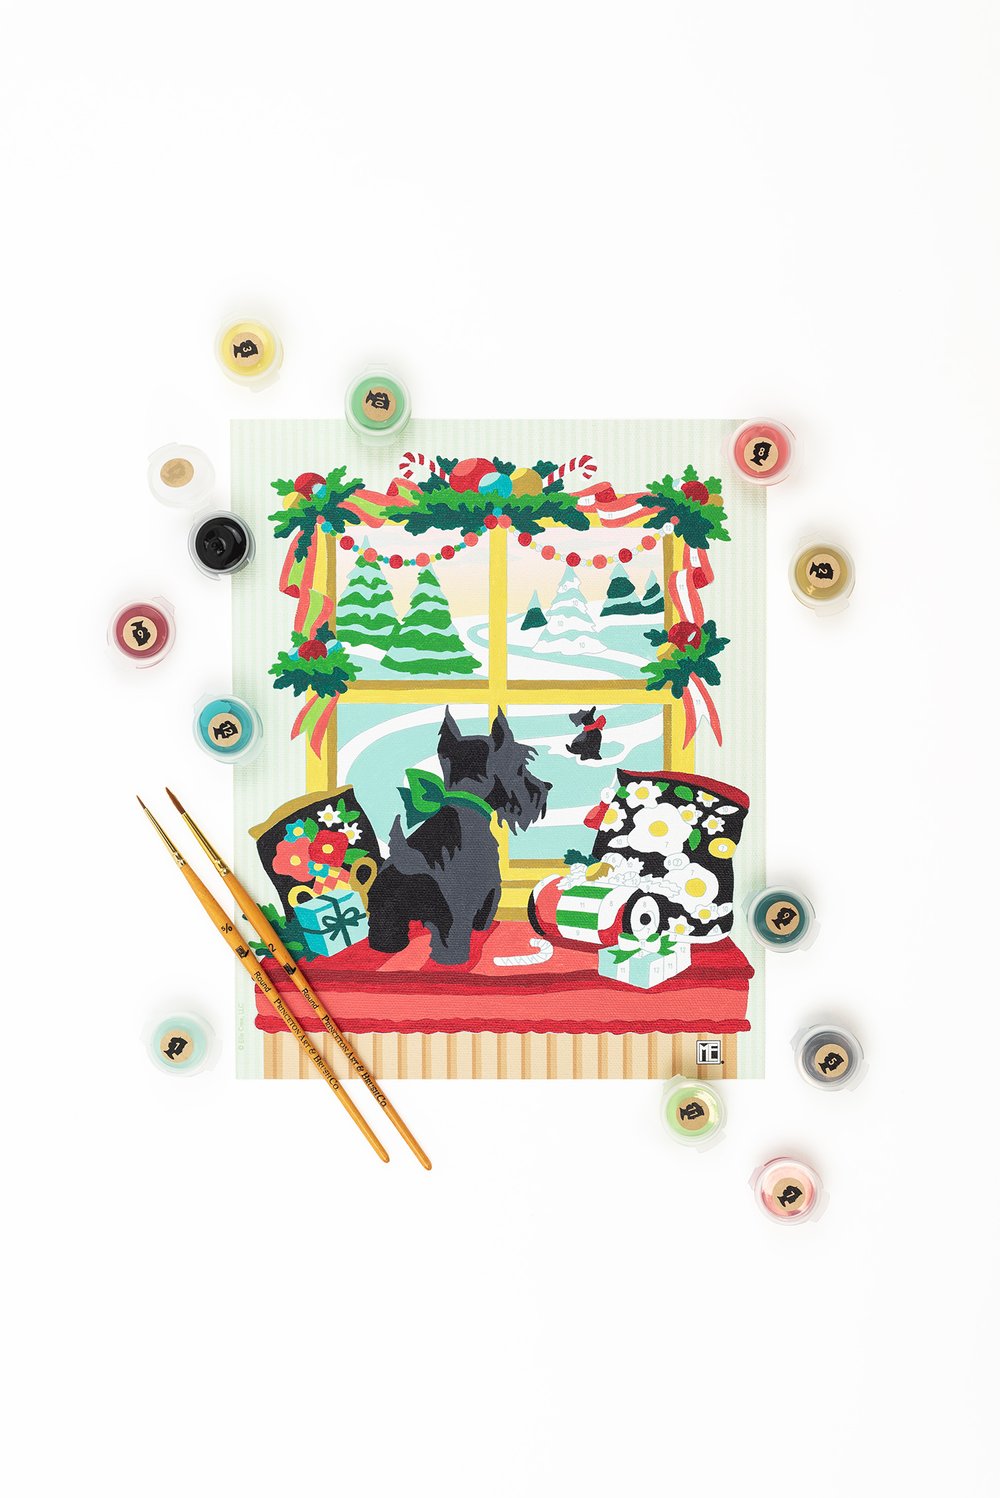 Elle Crée Mini Paint-by-Number Kits — Art Department LLC